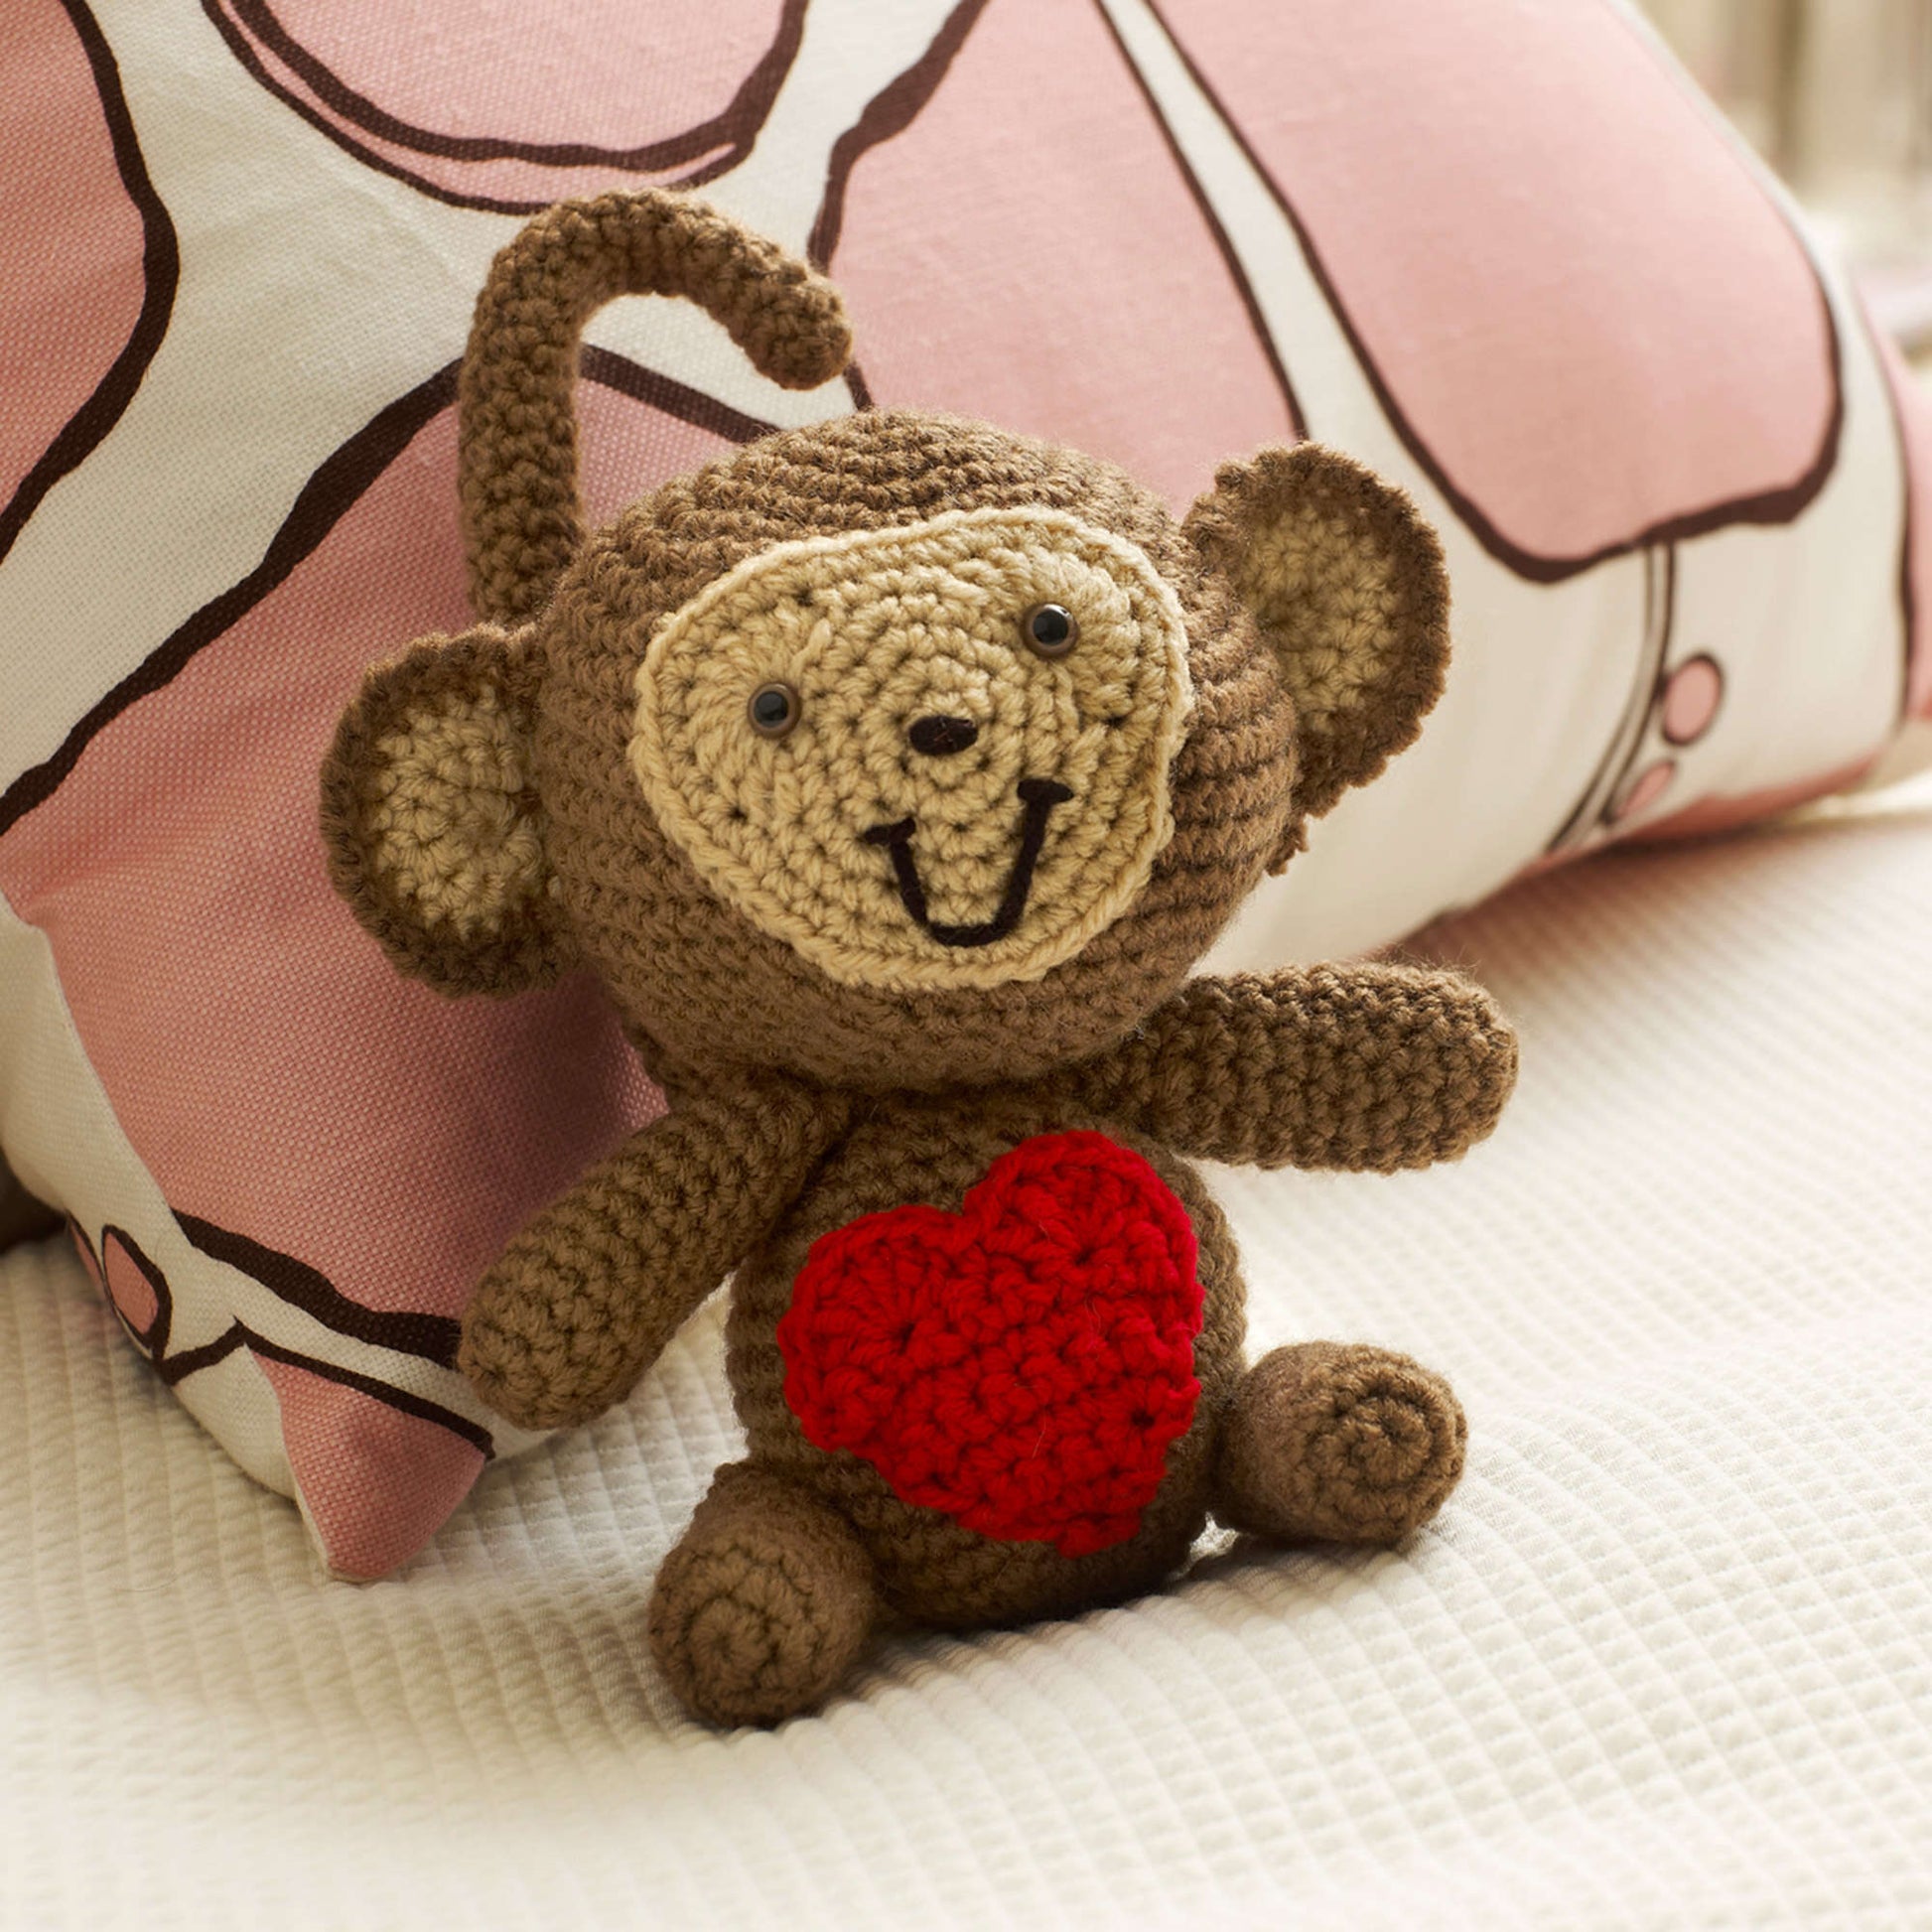 Free Red Heart Love Monkey Crochet Pattern